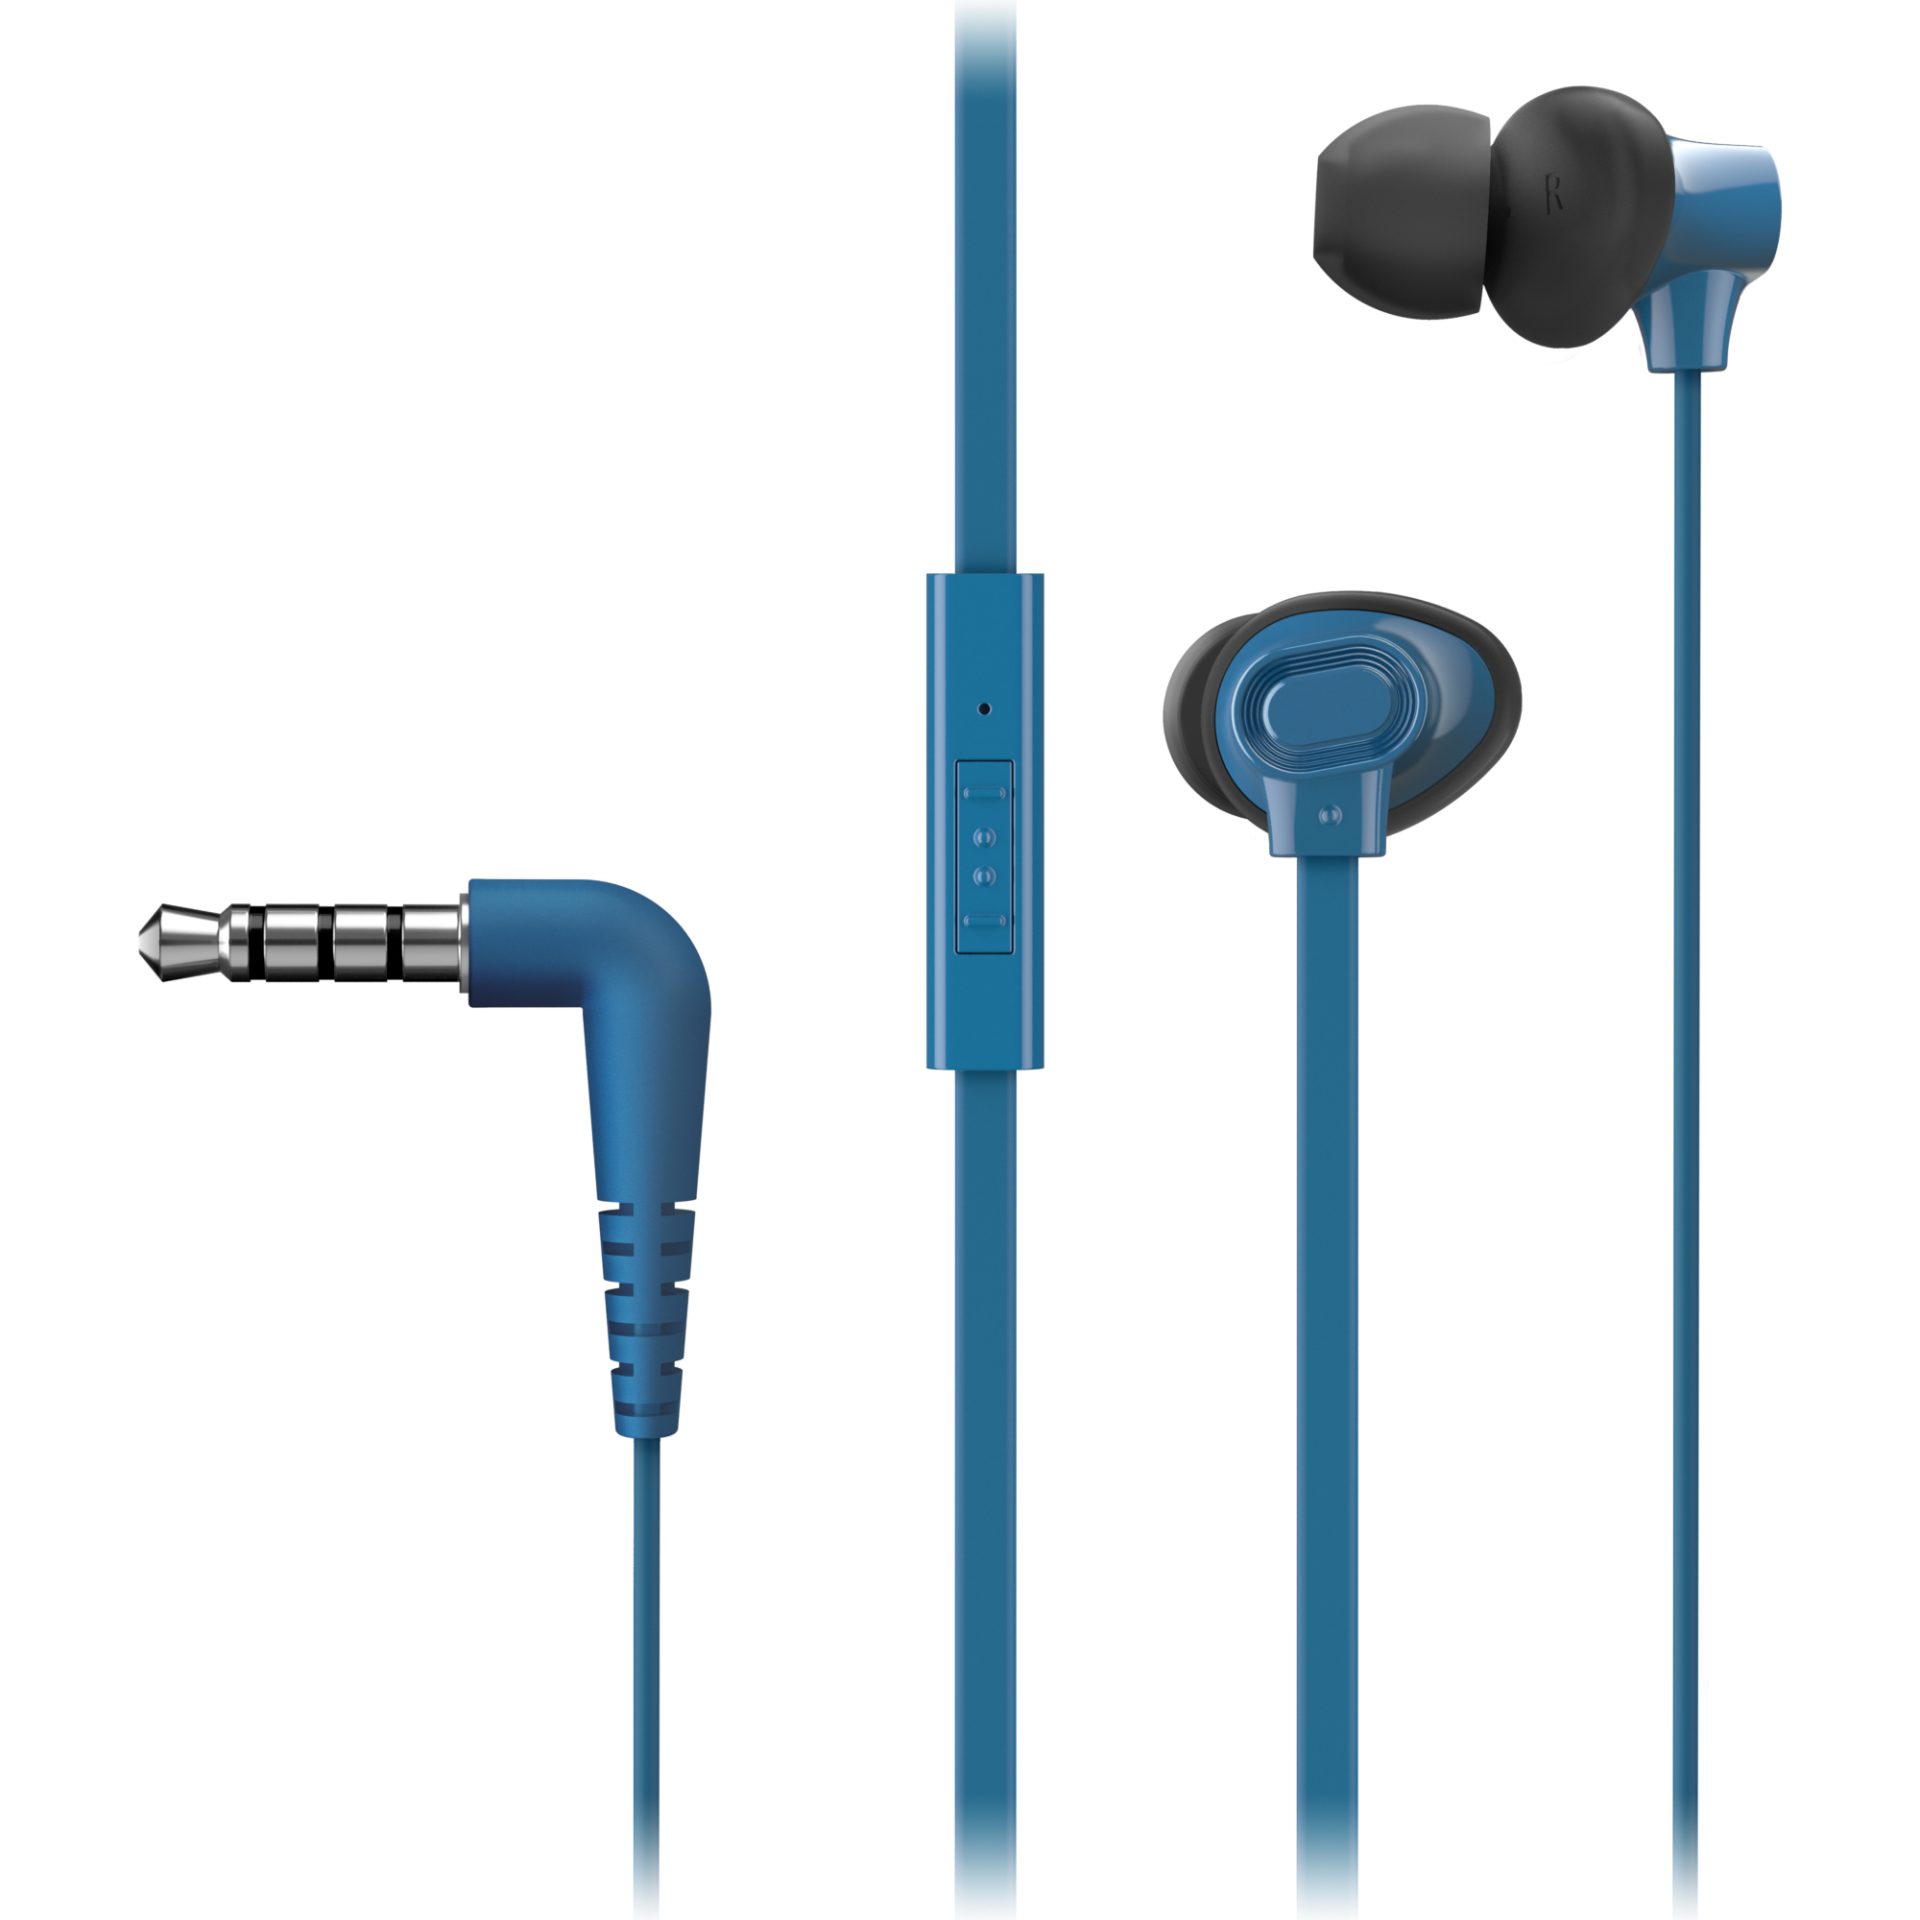 Panasonic RP-TCM130 sluchátka do uší (8,8mm měnič, bohaté basy, systém XBS, ERGOFIT PLUS, mikrofon a dálkové ovládání v kabelu), modrá